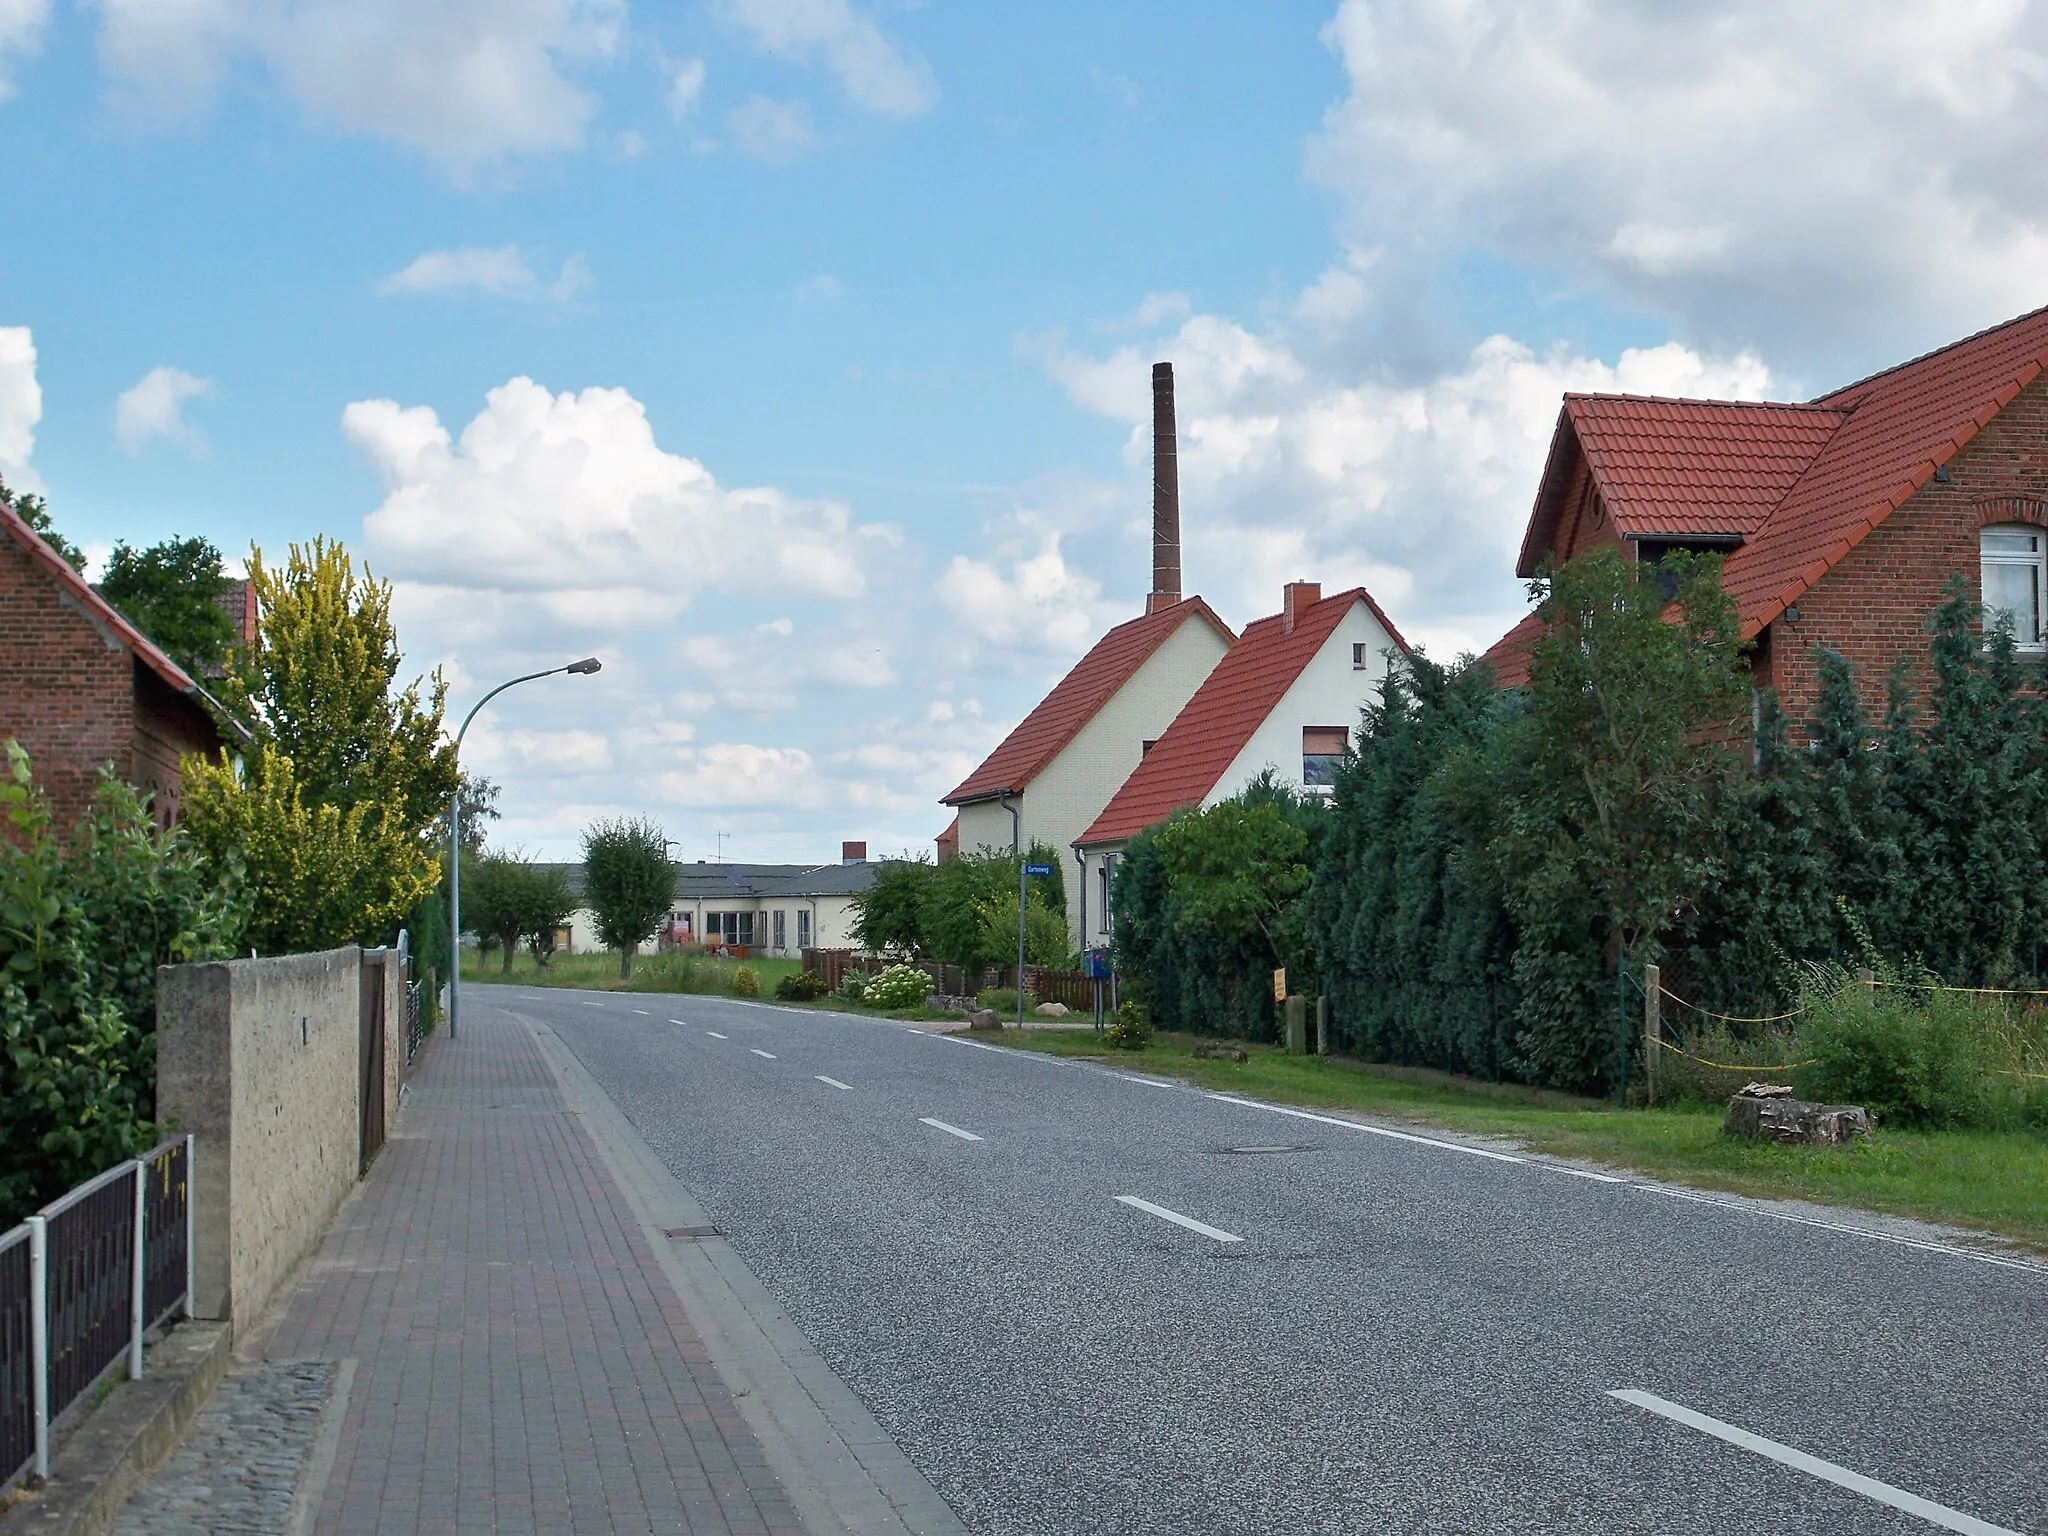 Photo showing: Döhren, Oebisfelde-Weferlingen, Saxony-Anhalt, view with chimney